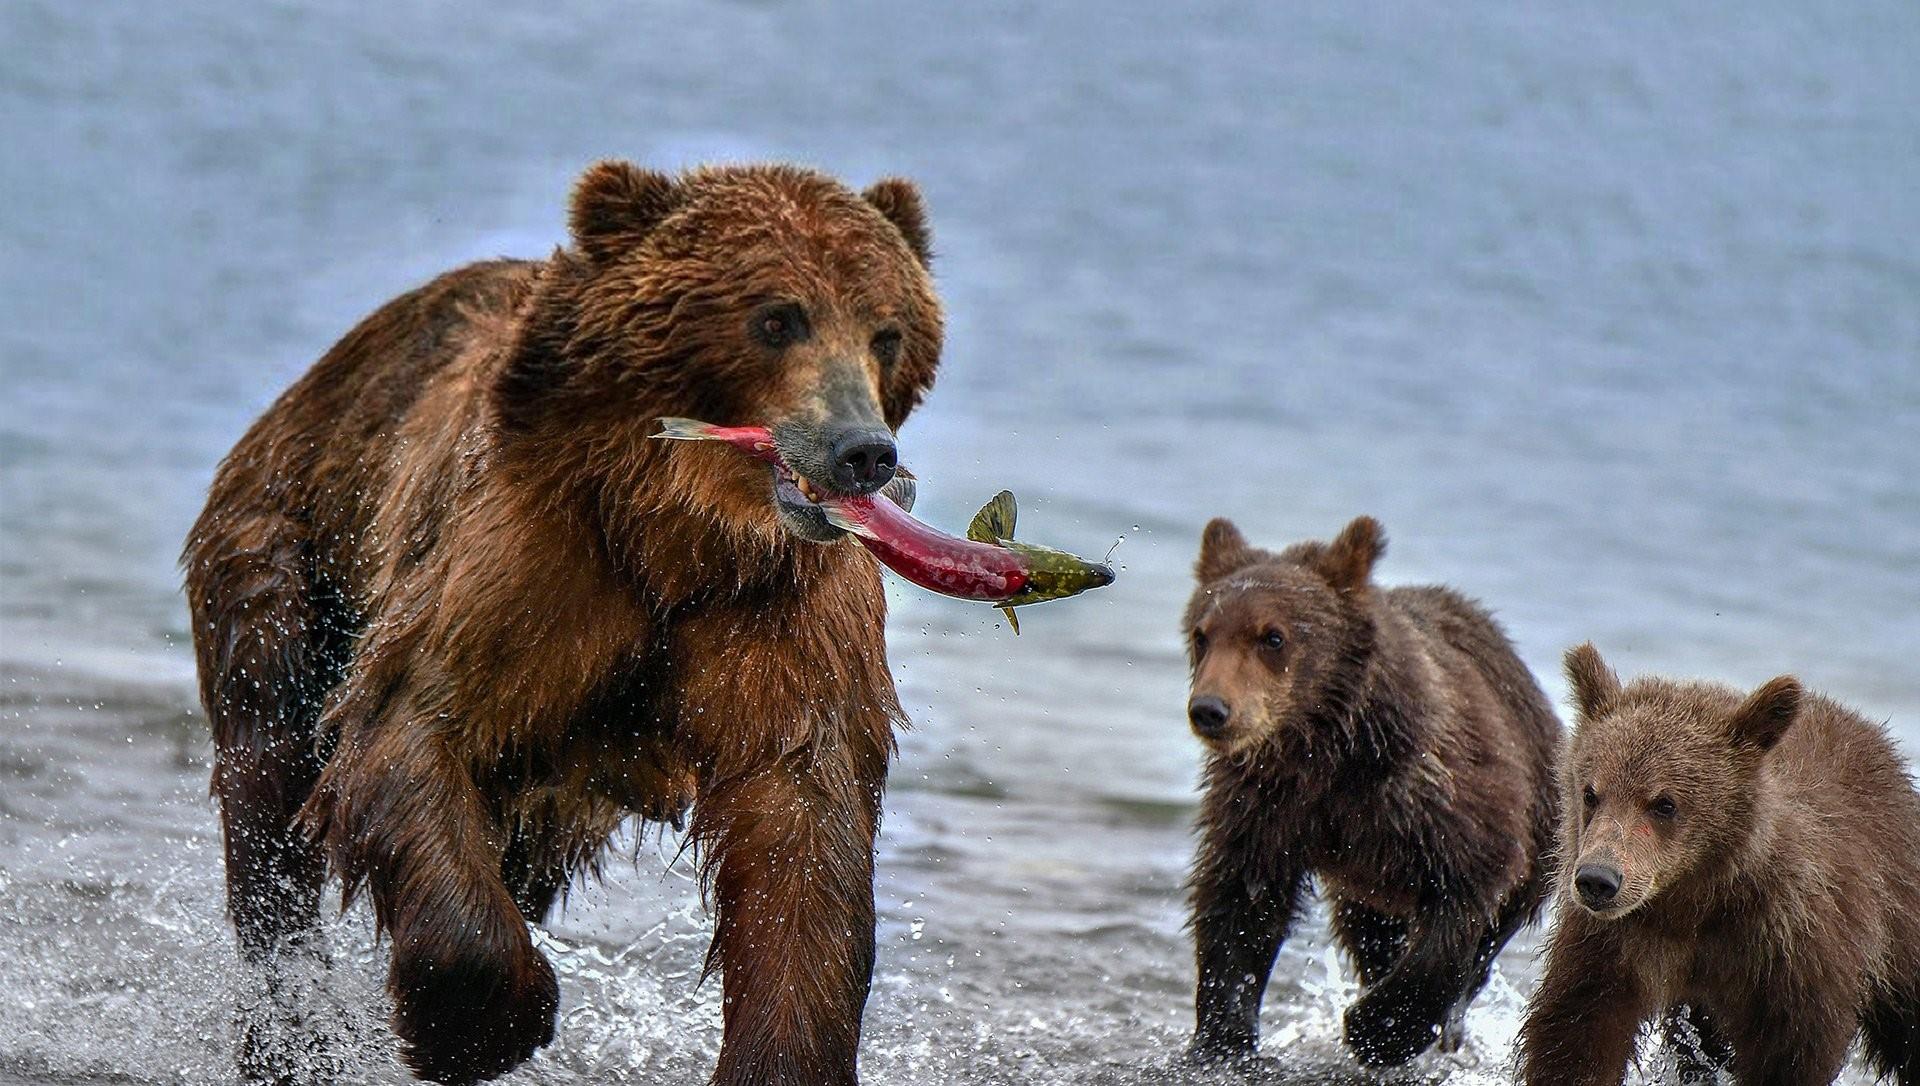 Описание фотографии камчатский бурый медведь. Бурый медведь Камчатки. Бурый медведь Камчатский медведь. Медведь с рыбой. Бурый медведь с рыбой.